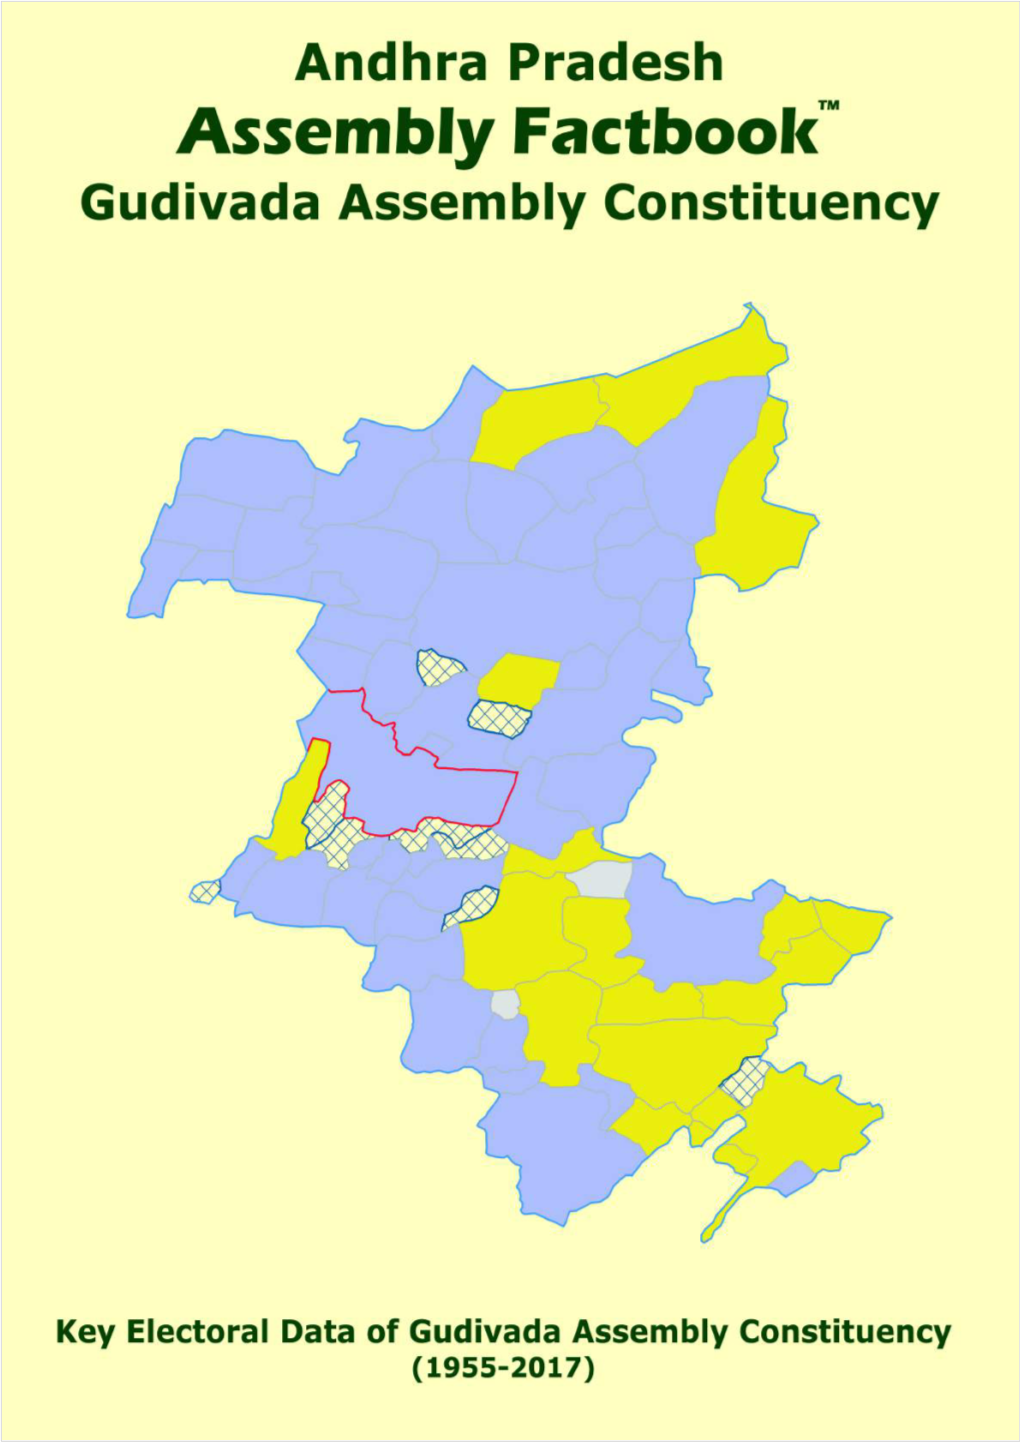 Gudivada Assembly Andhra Pradesh Factbook